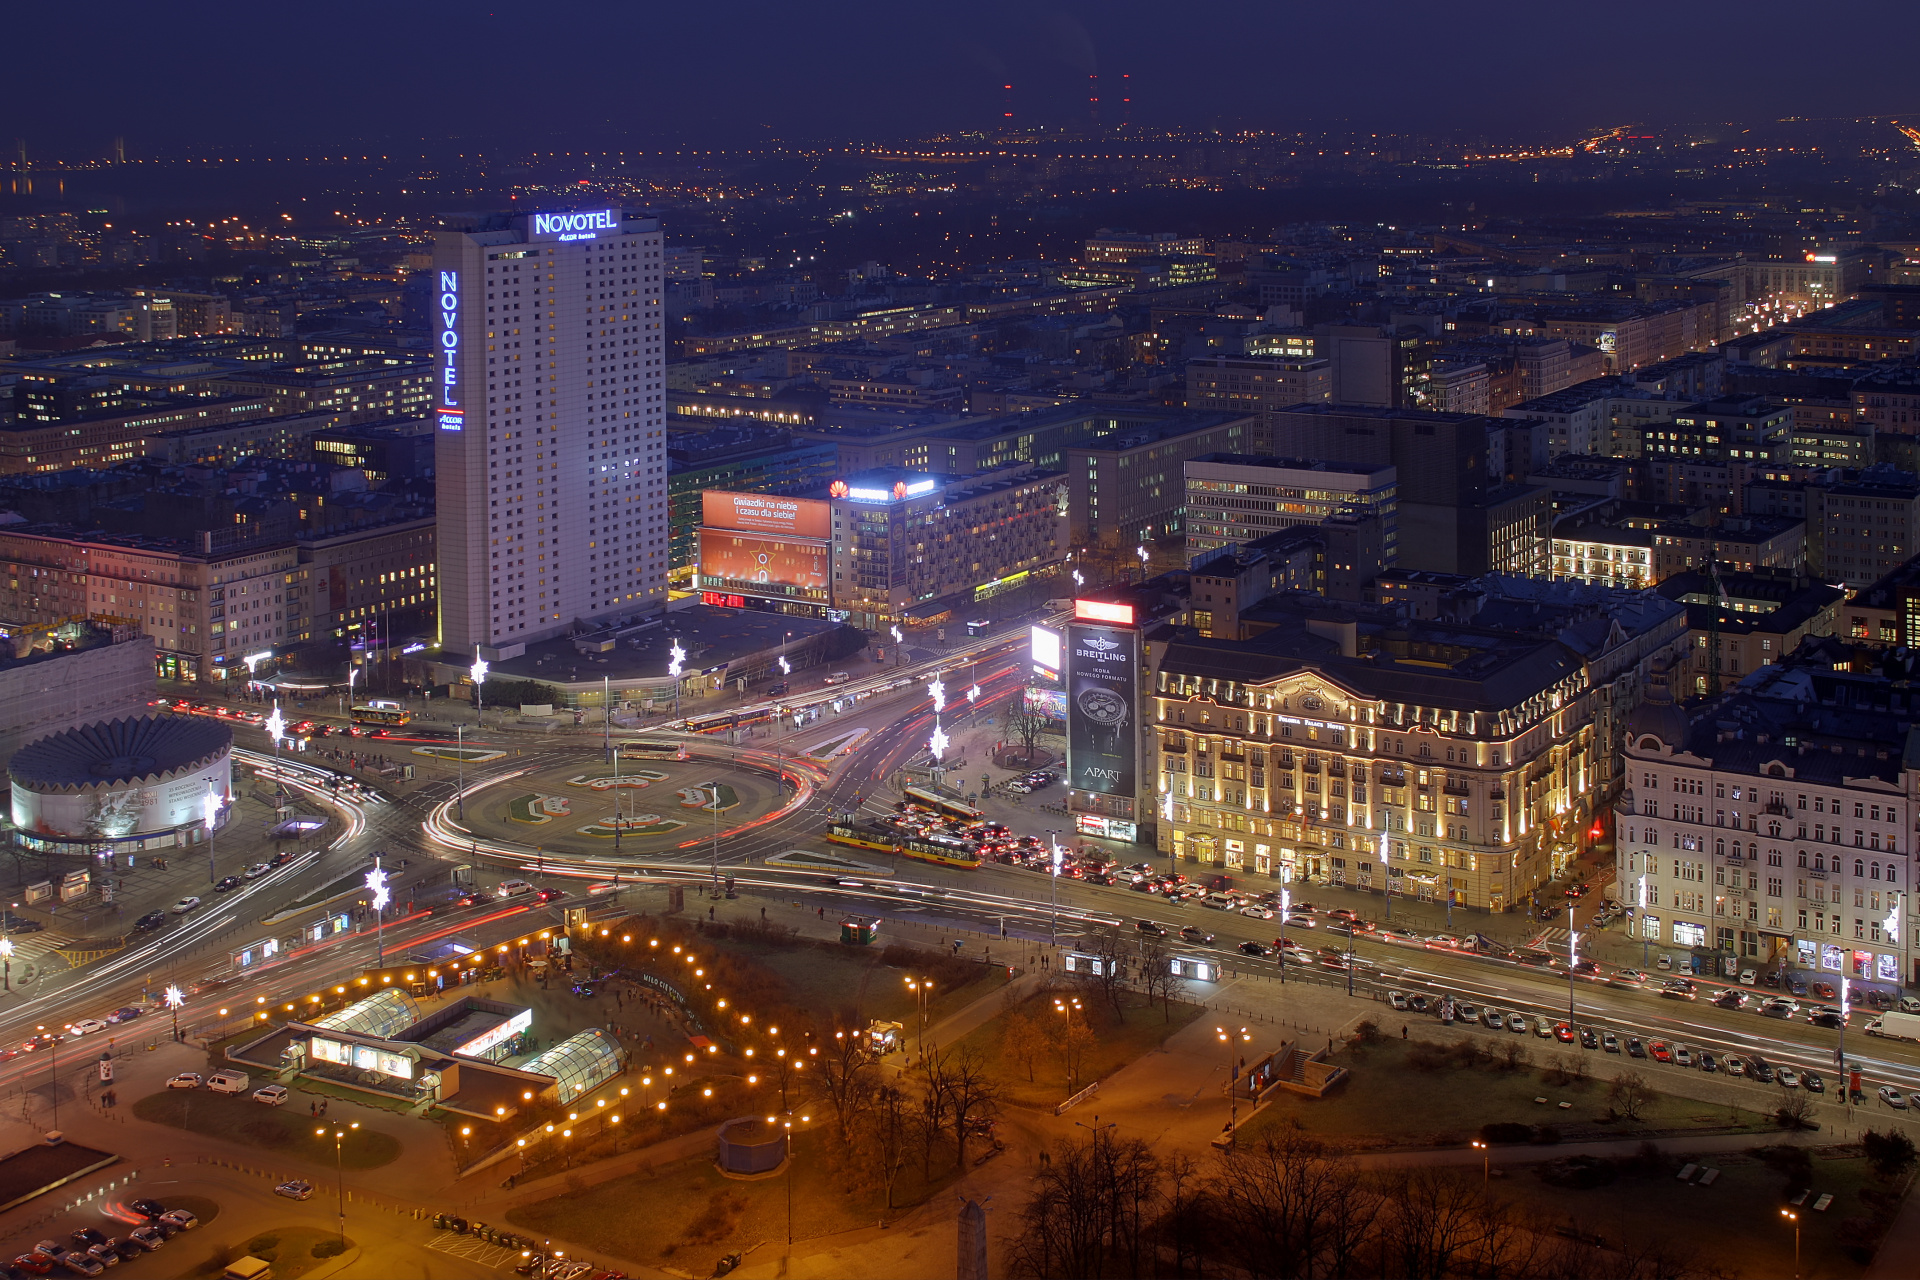 Rotunda, Rondo Dmowskiego, Novotel, Hotel Polonia, MDM i Solec (Warszawa » Warszawa z góry)